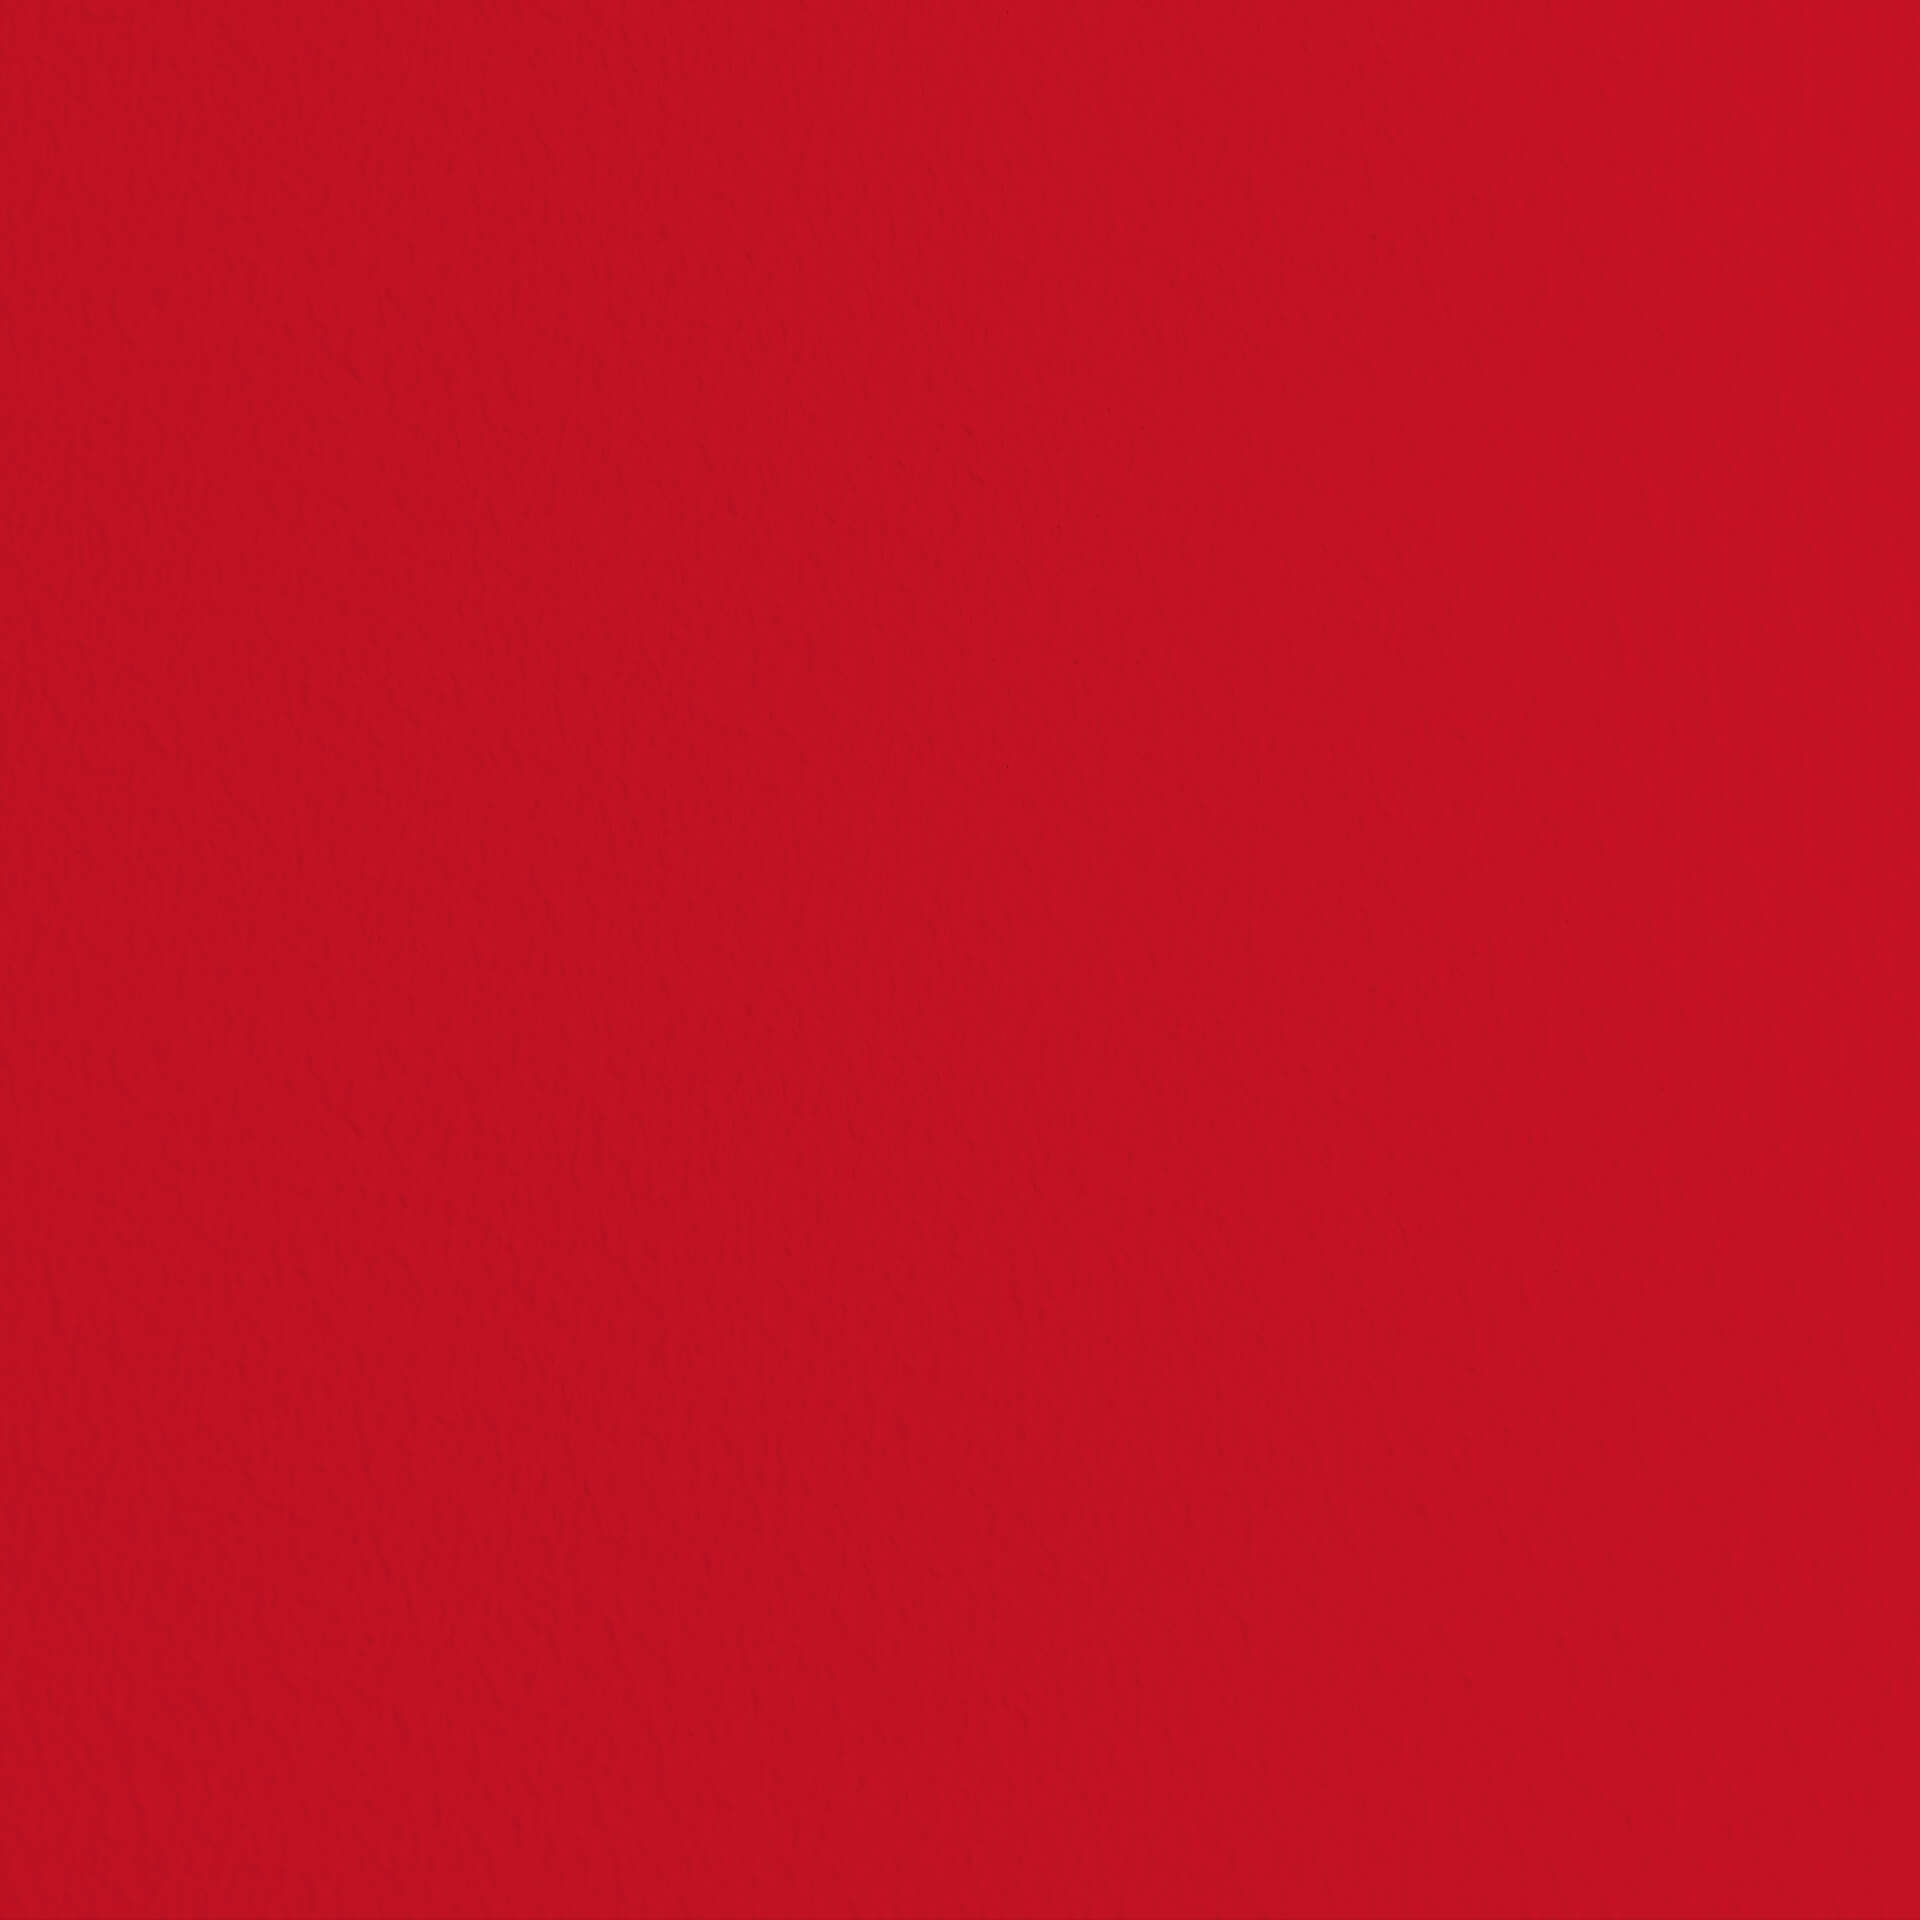 Mylands FTT 009 Bright Red - Marble Matt Emulsion / Wandfarbe, 1L